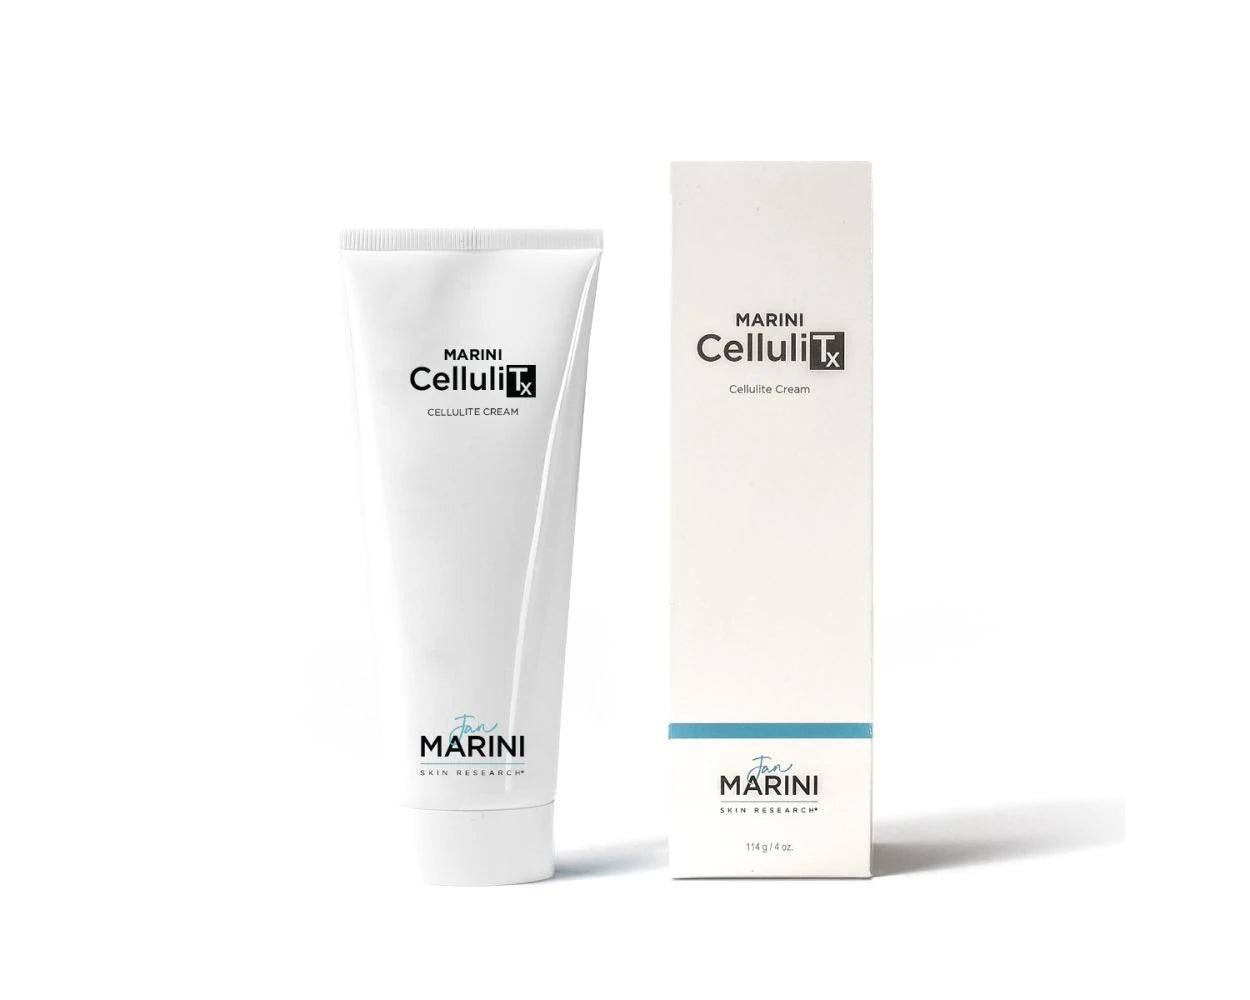 Jan Marini Cellulite-Creme Marini CelluliTx 114g